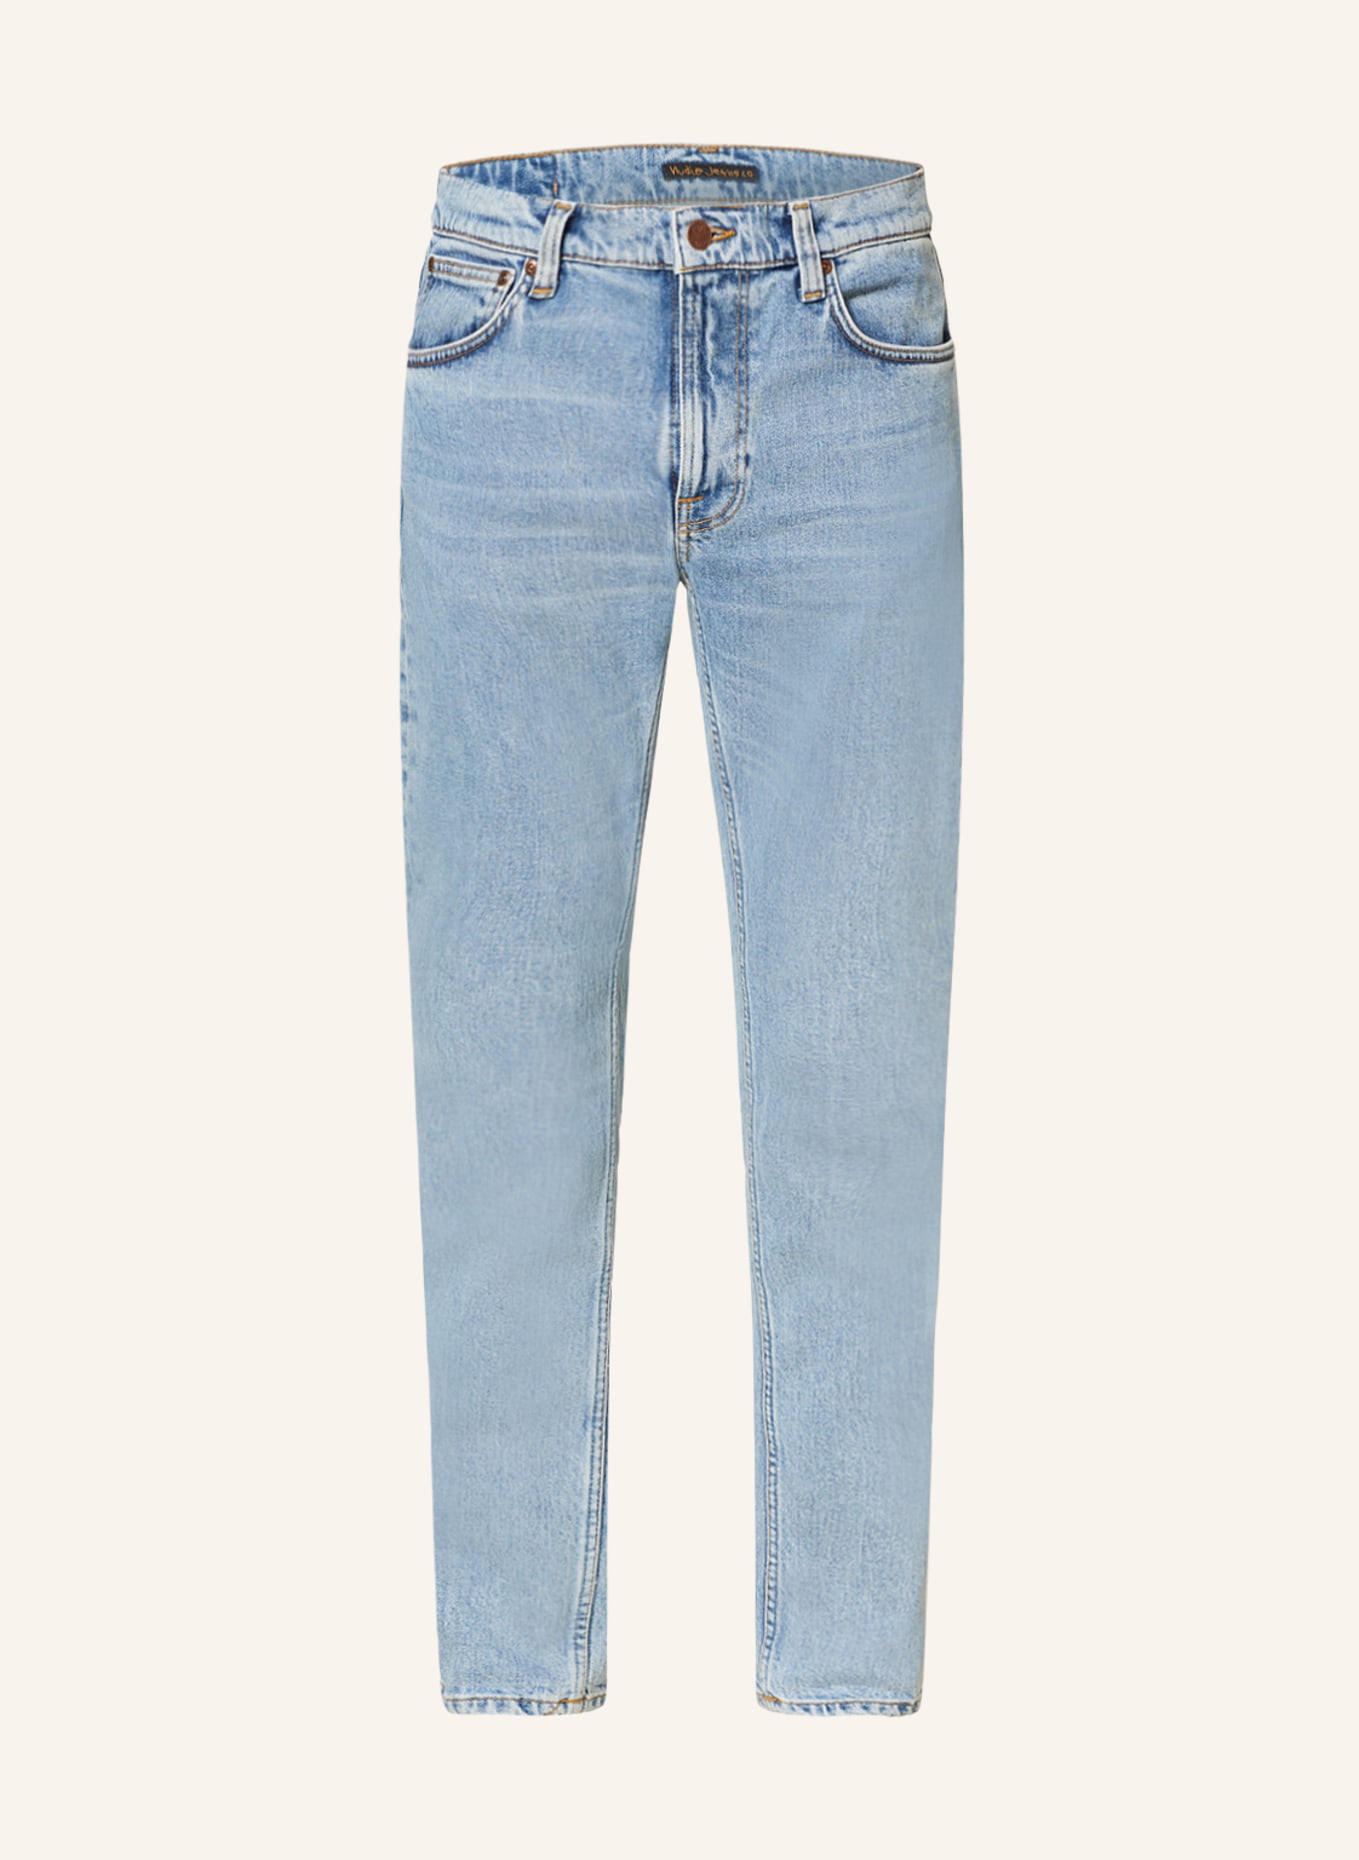 Nudie Jeans Jeans LEAN DEAN, Farbe: Calm Blues (Bild 1)